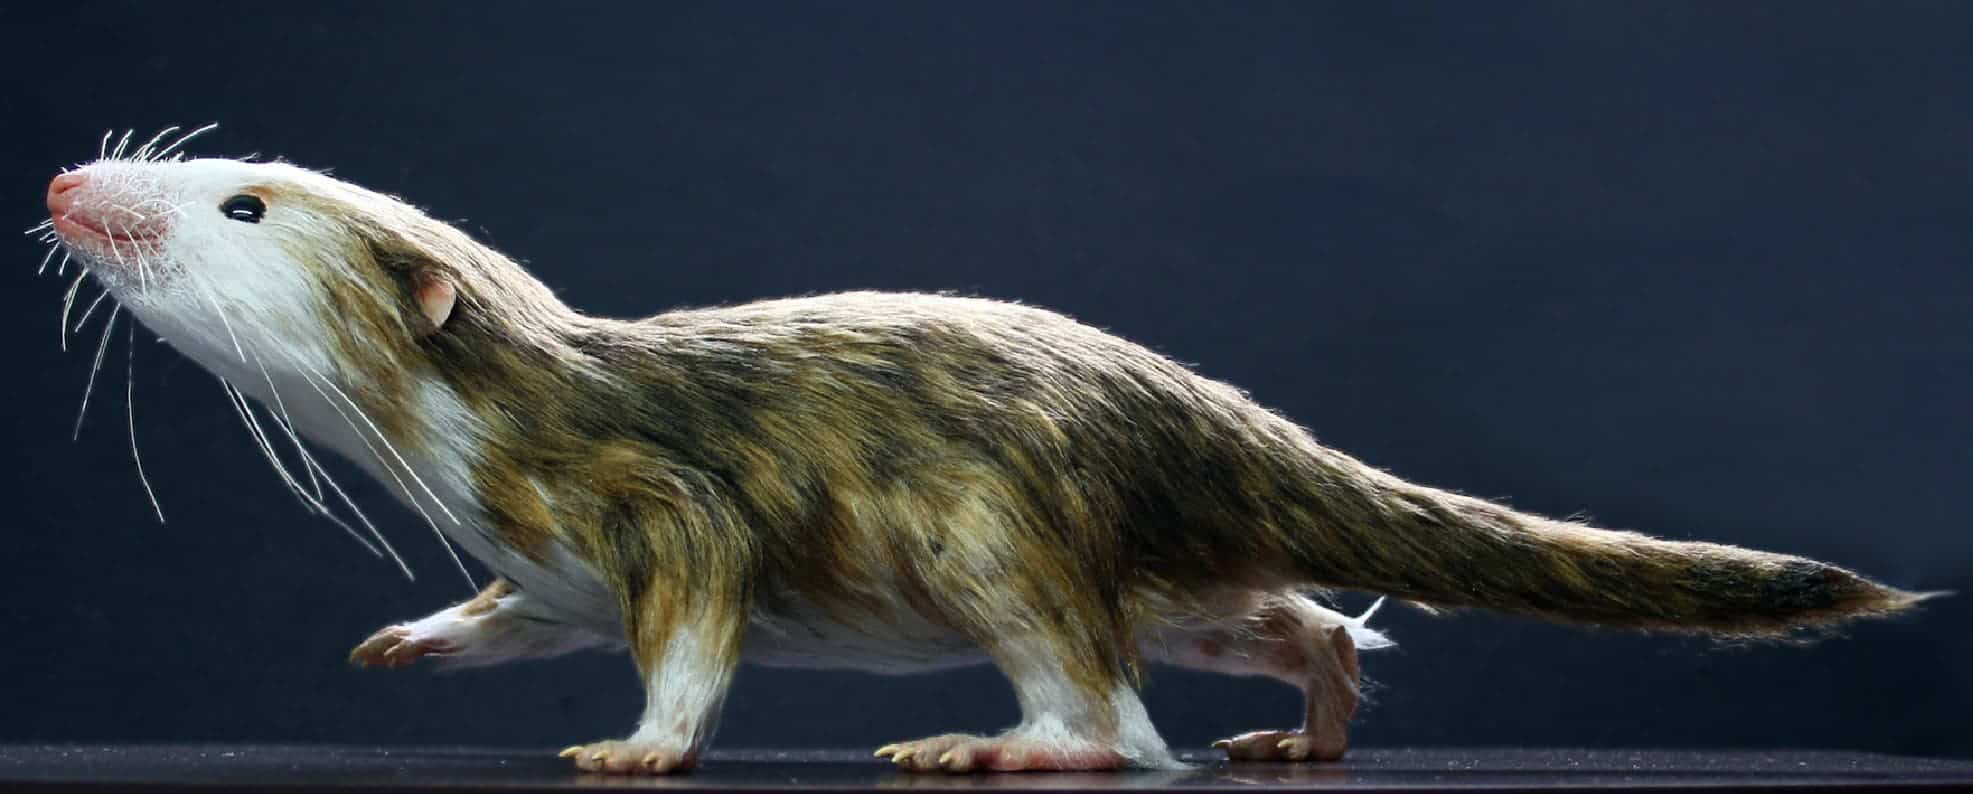 Mammaliaform Morgauncodon